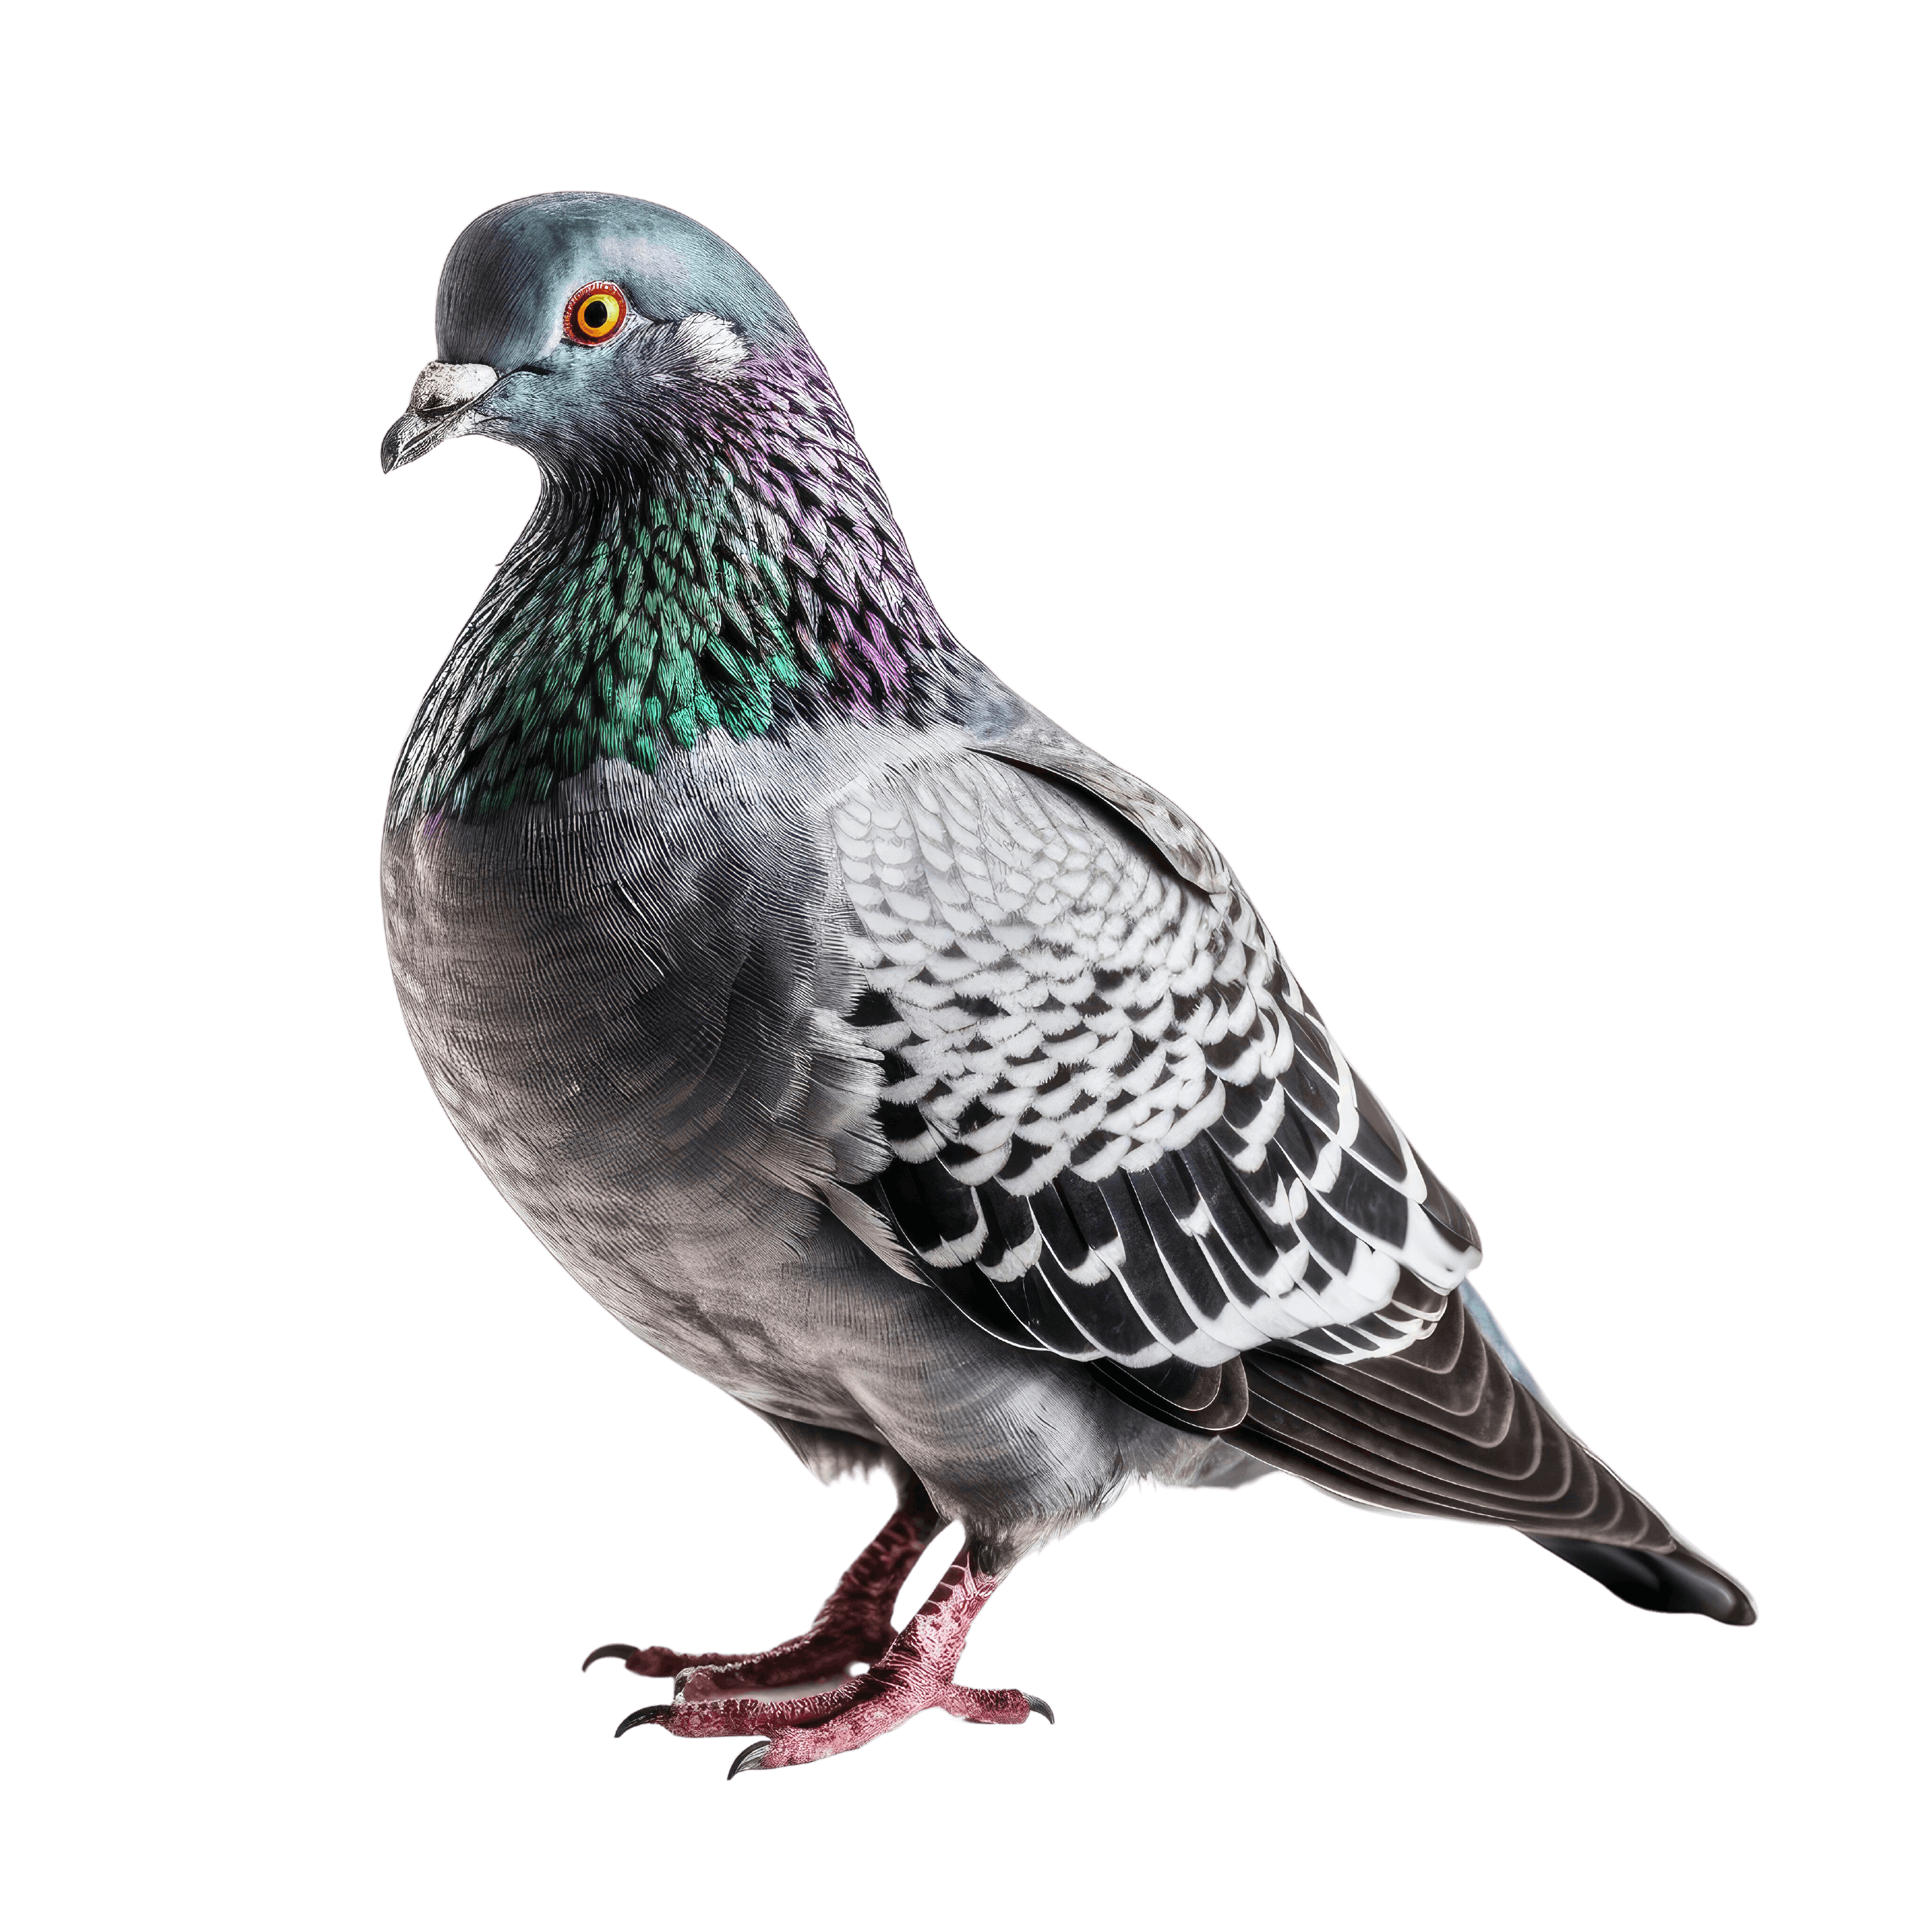 Filets anti pigeons pourquoi les utiliser ? Et comment ?